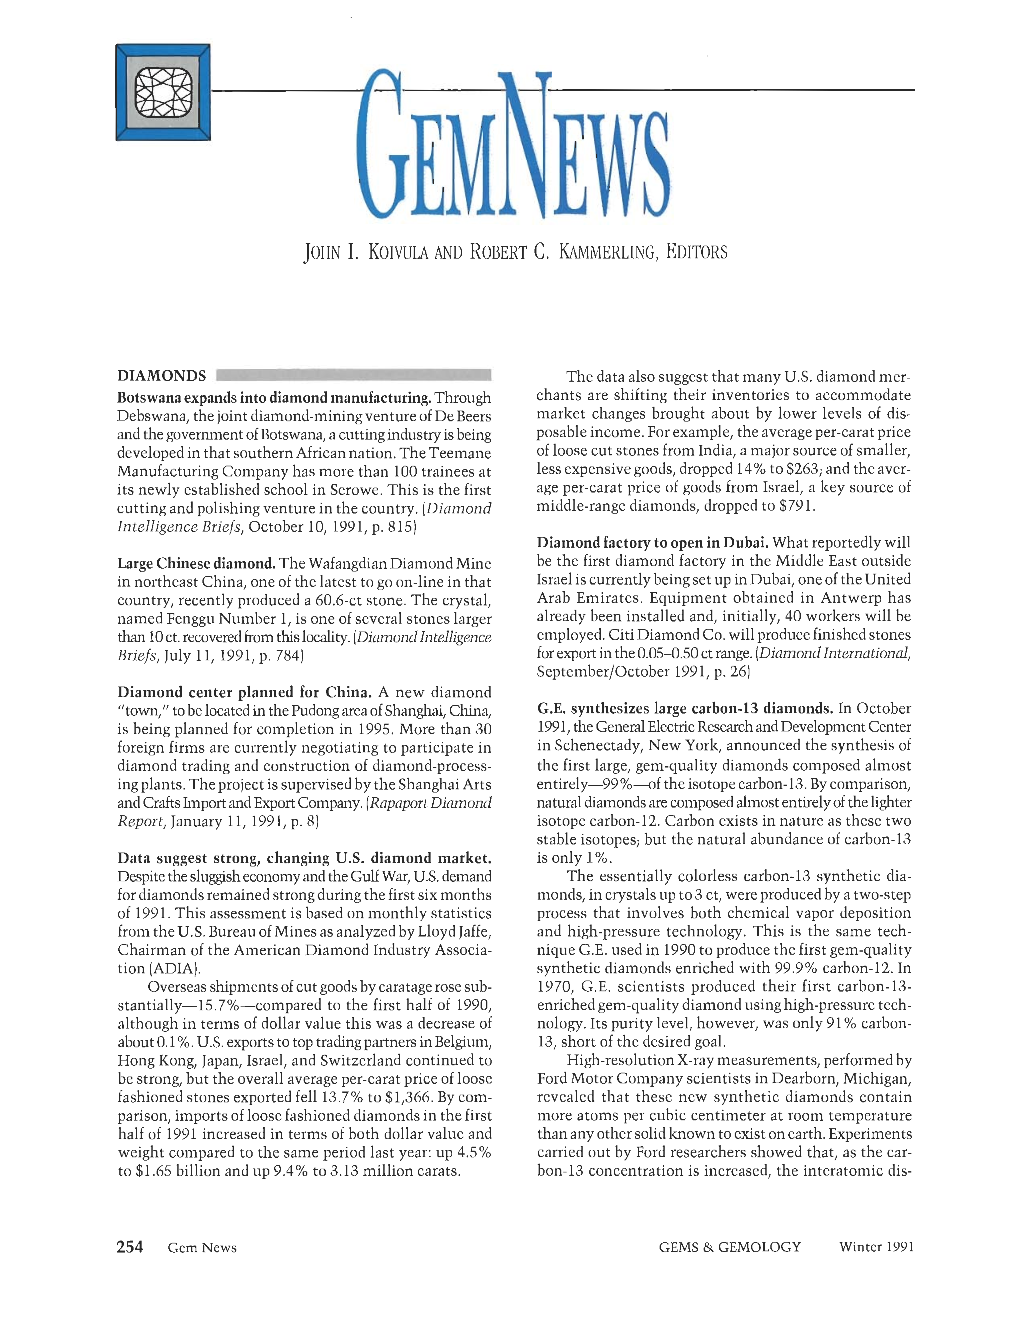 Winter 1991 Gems & Gemology Gem News